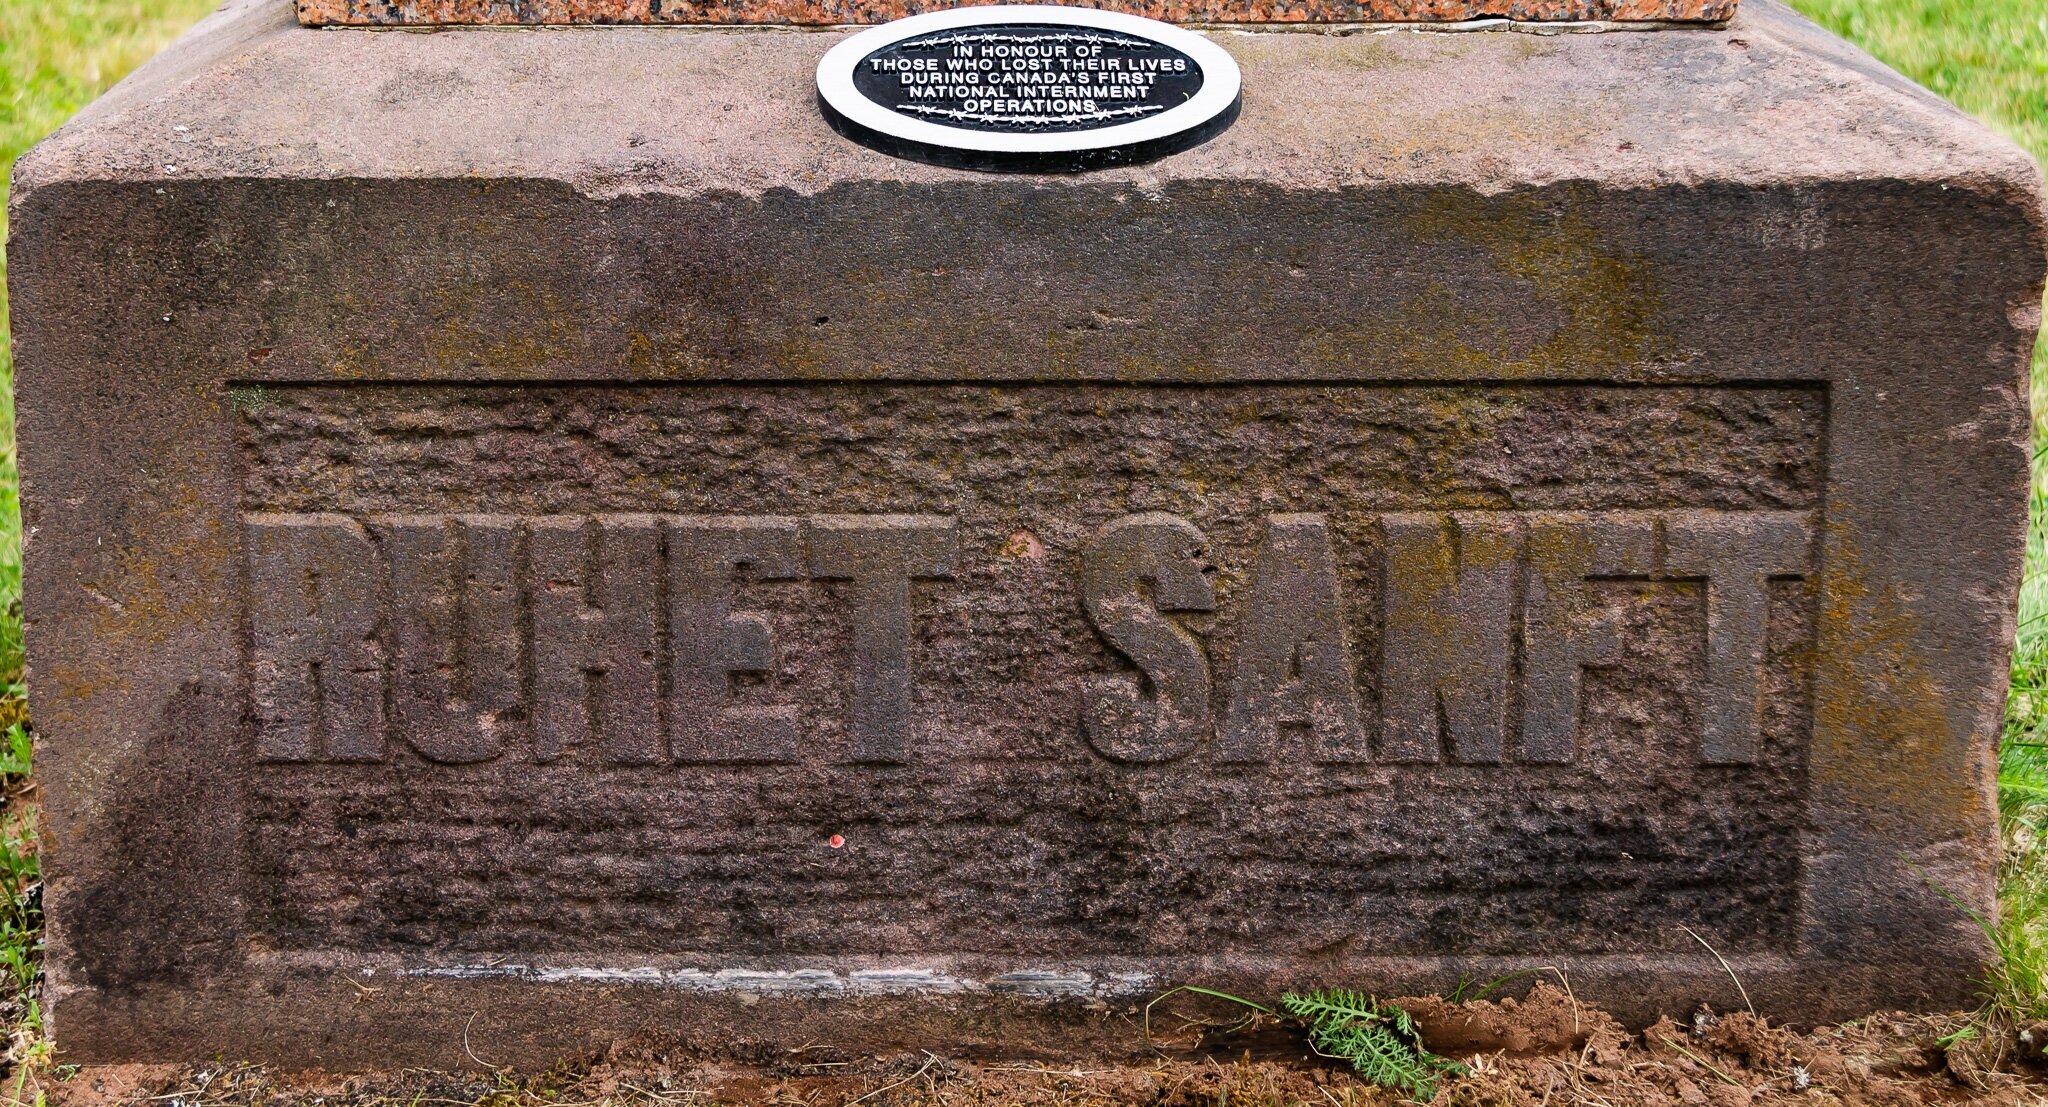 Leg 1: Amherst, POW Grave